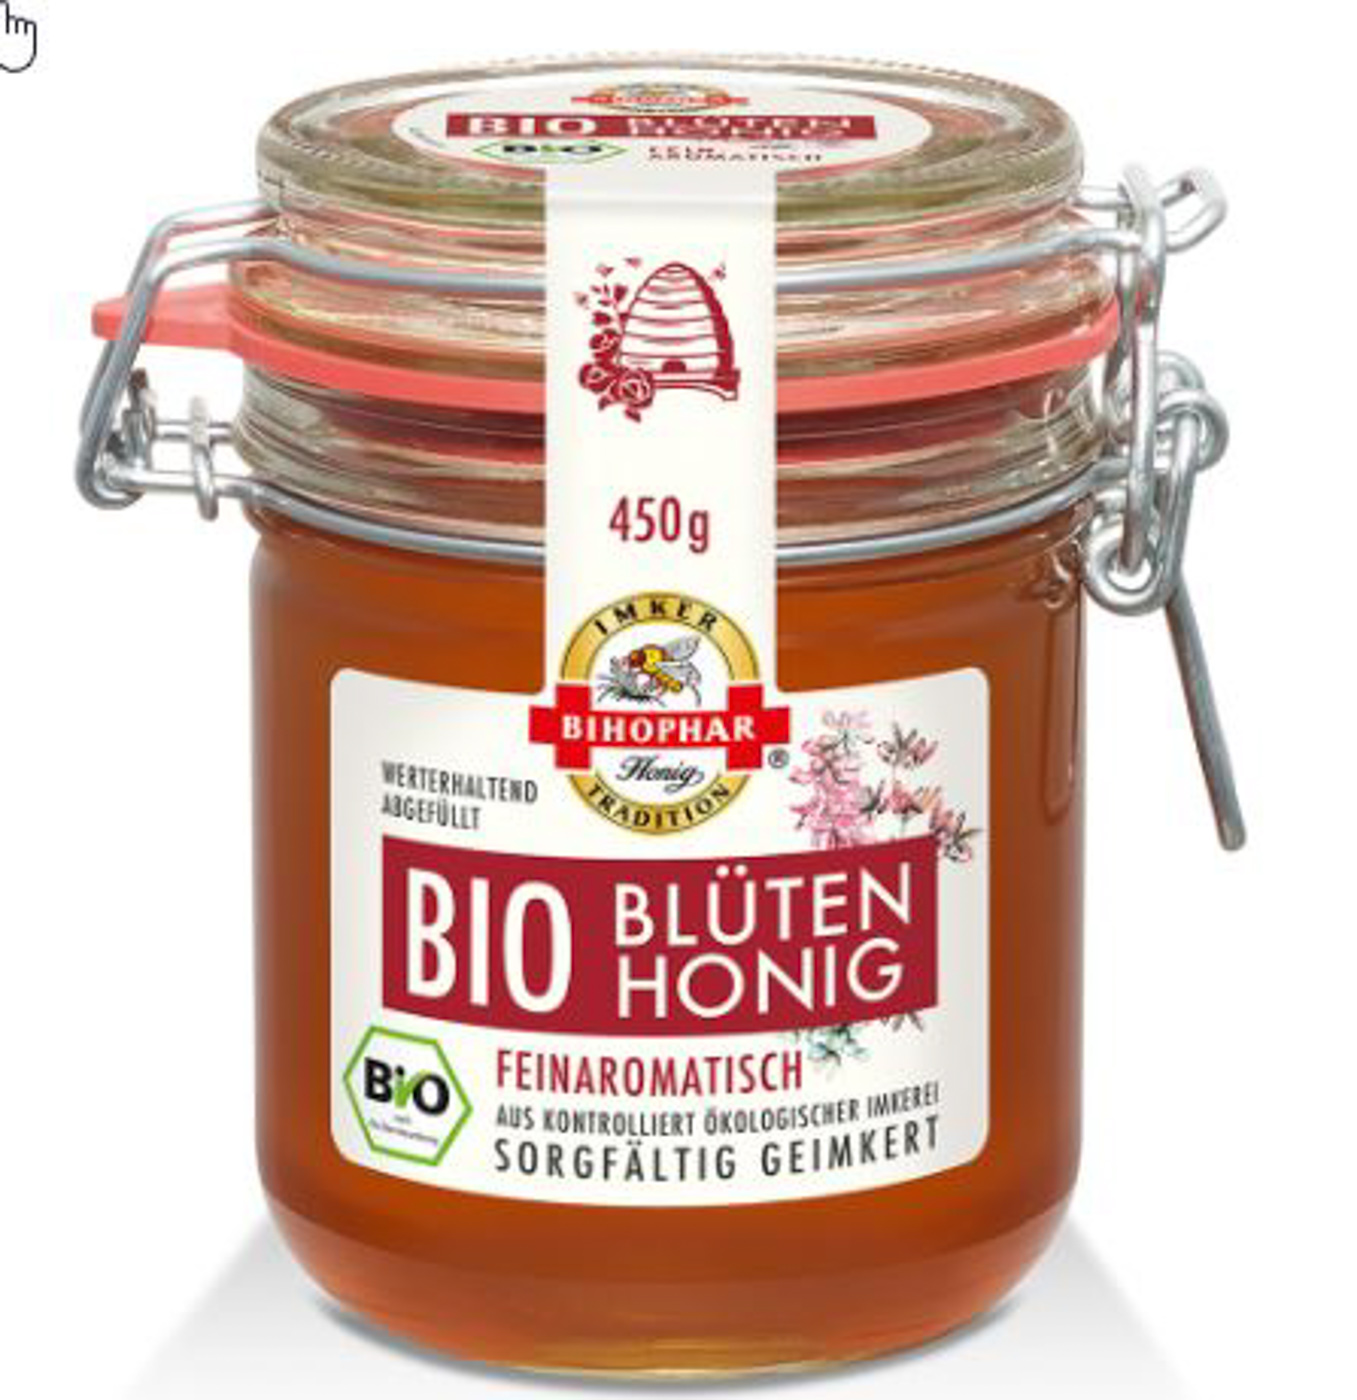 Bihophar Bio Blüten Honig flüssig Bügelglas 450G